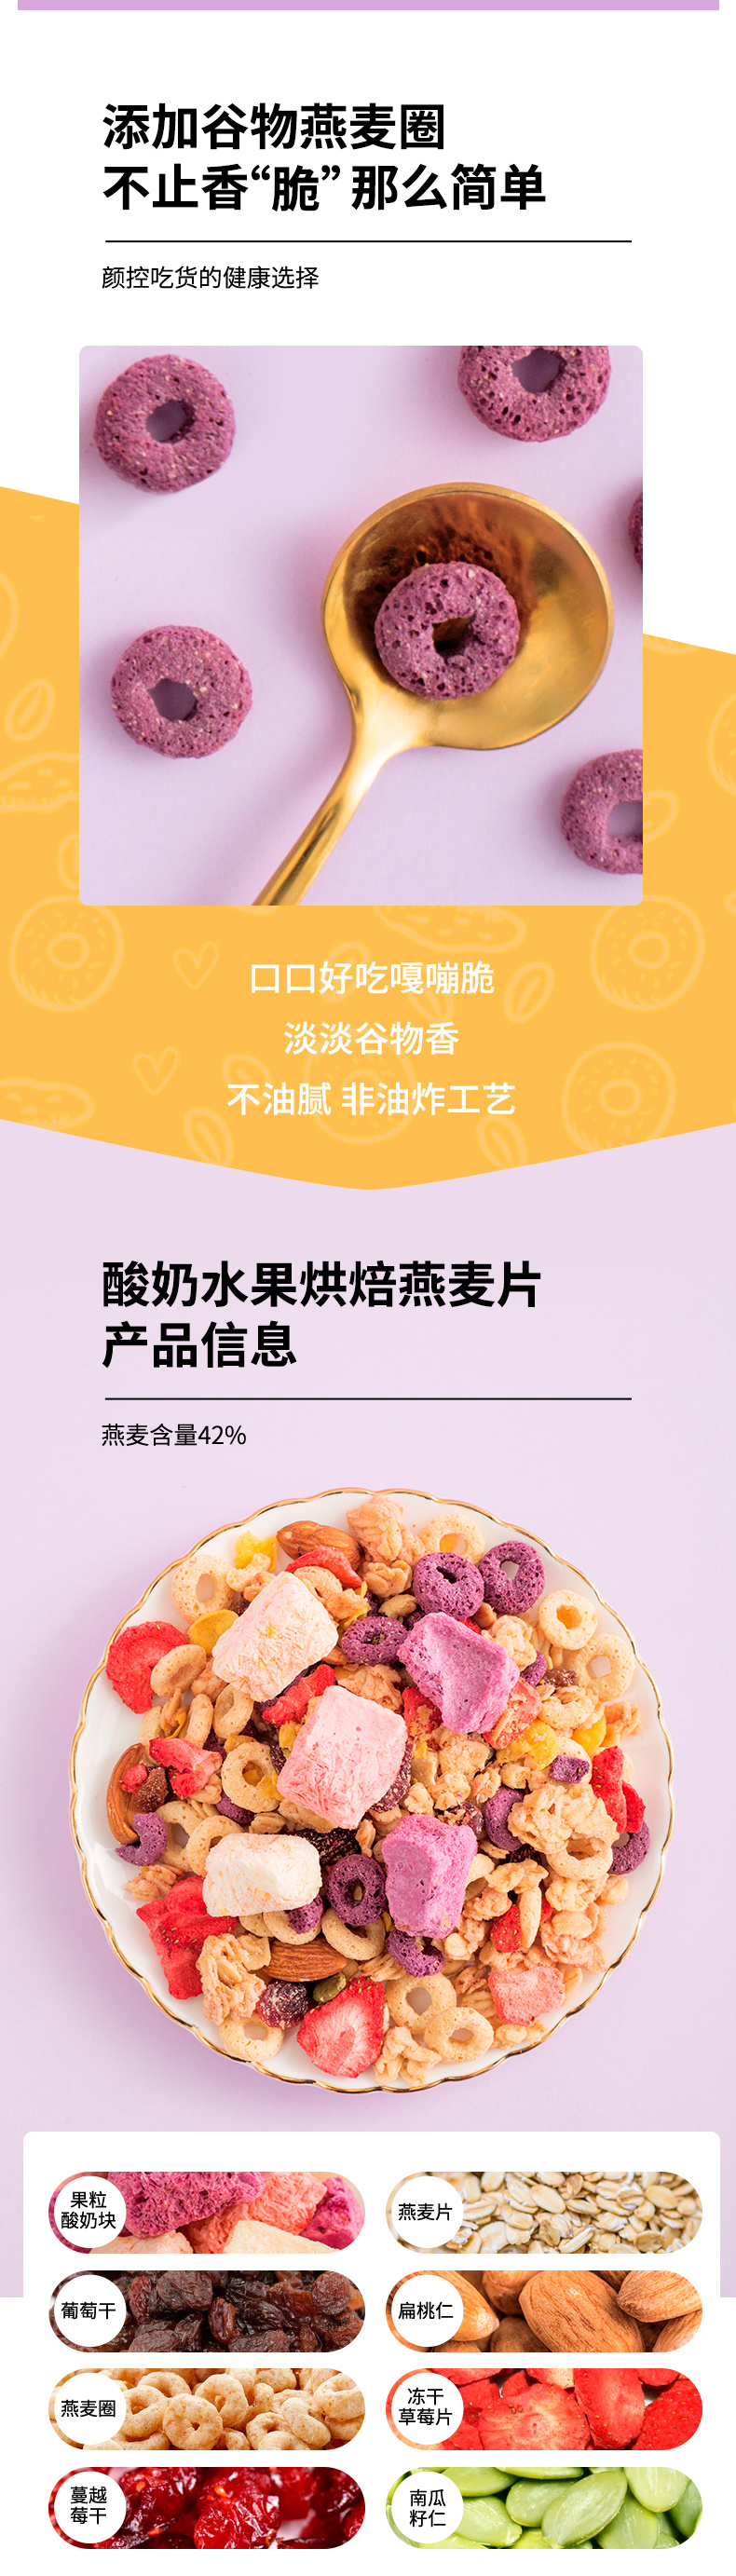 桂林西麦食品股份有限公司